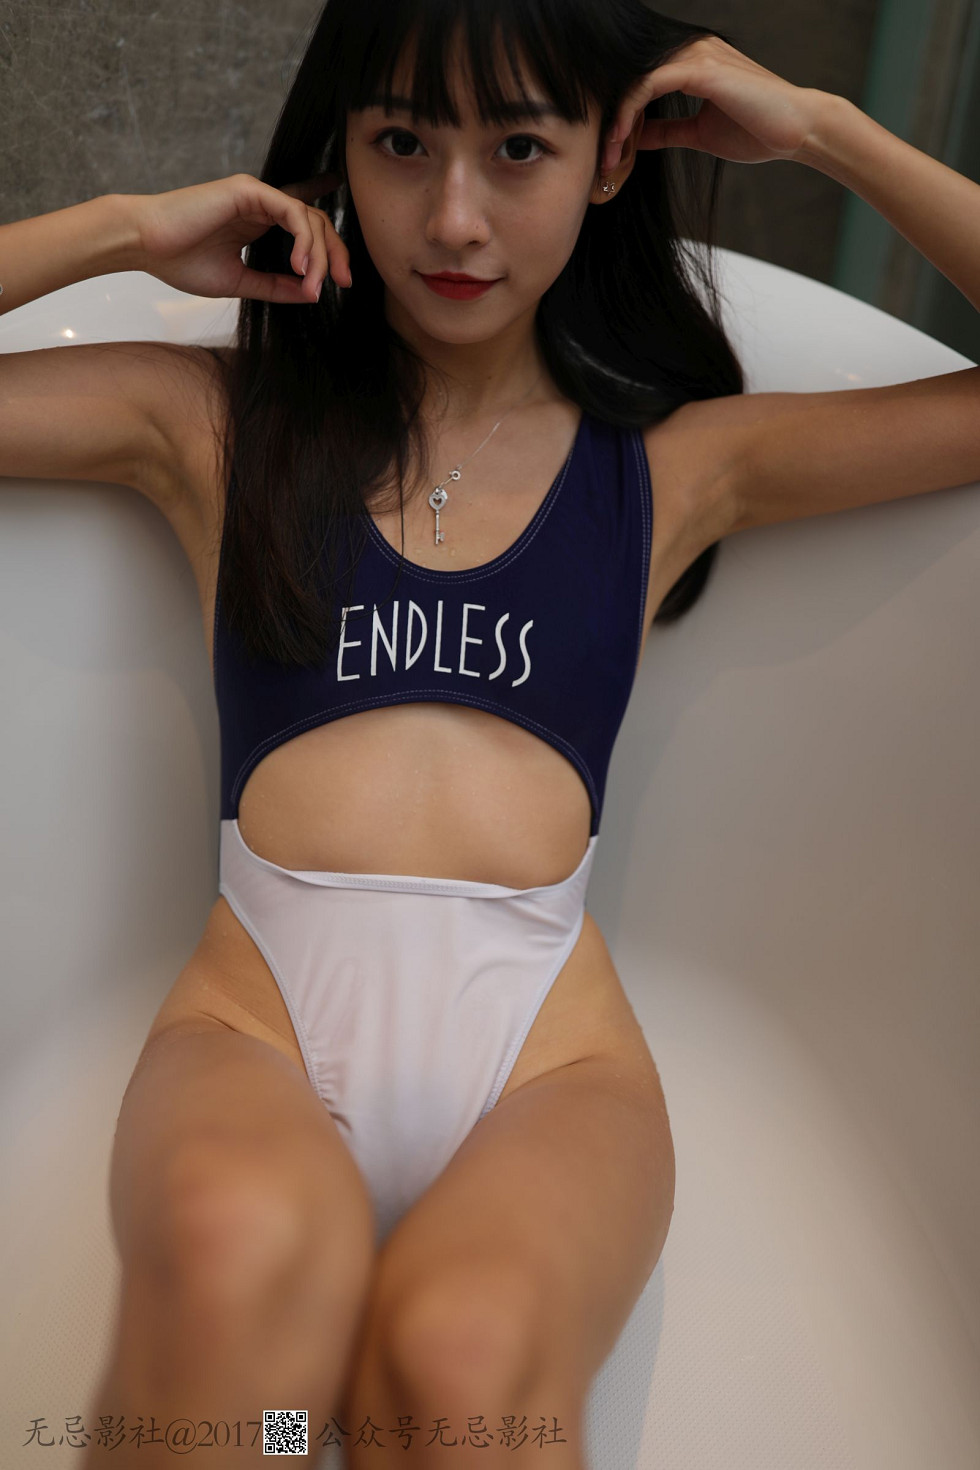 [无忌影社]2017年06月众筹作品之1模特唯唯平胸妹子的性感护士装丁字裤诱惑写真61P